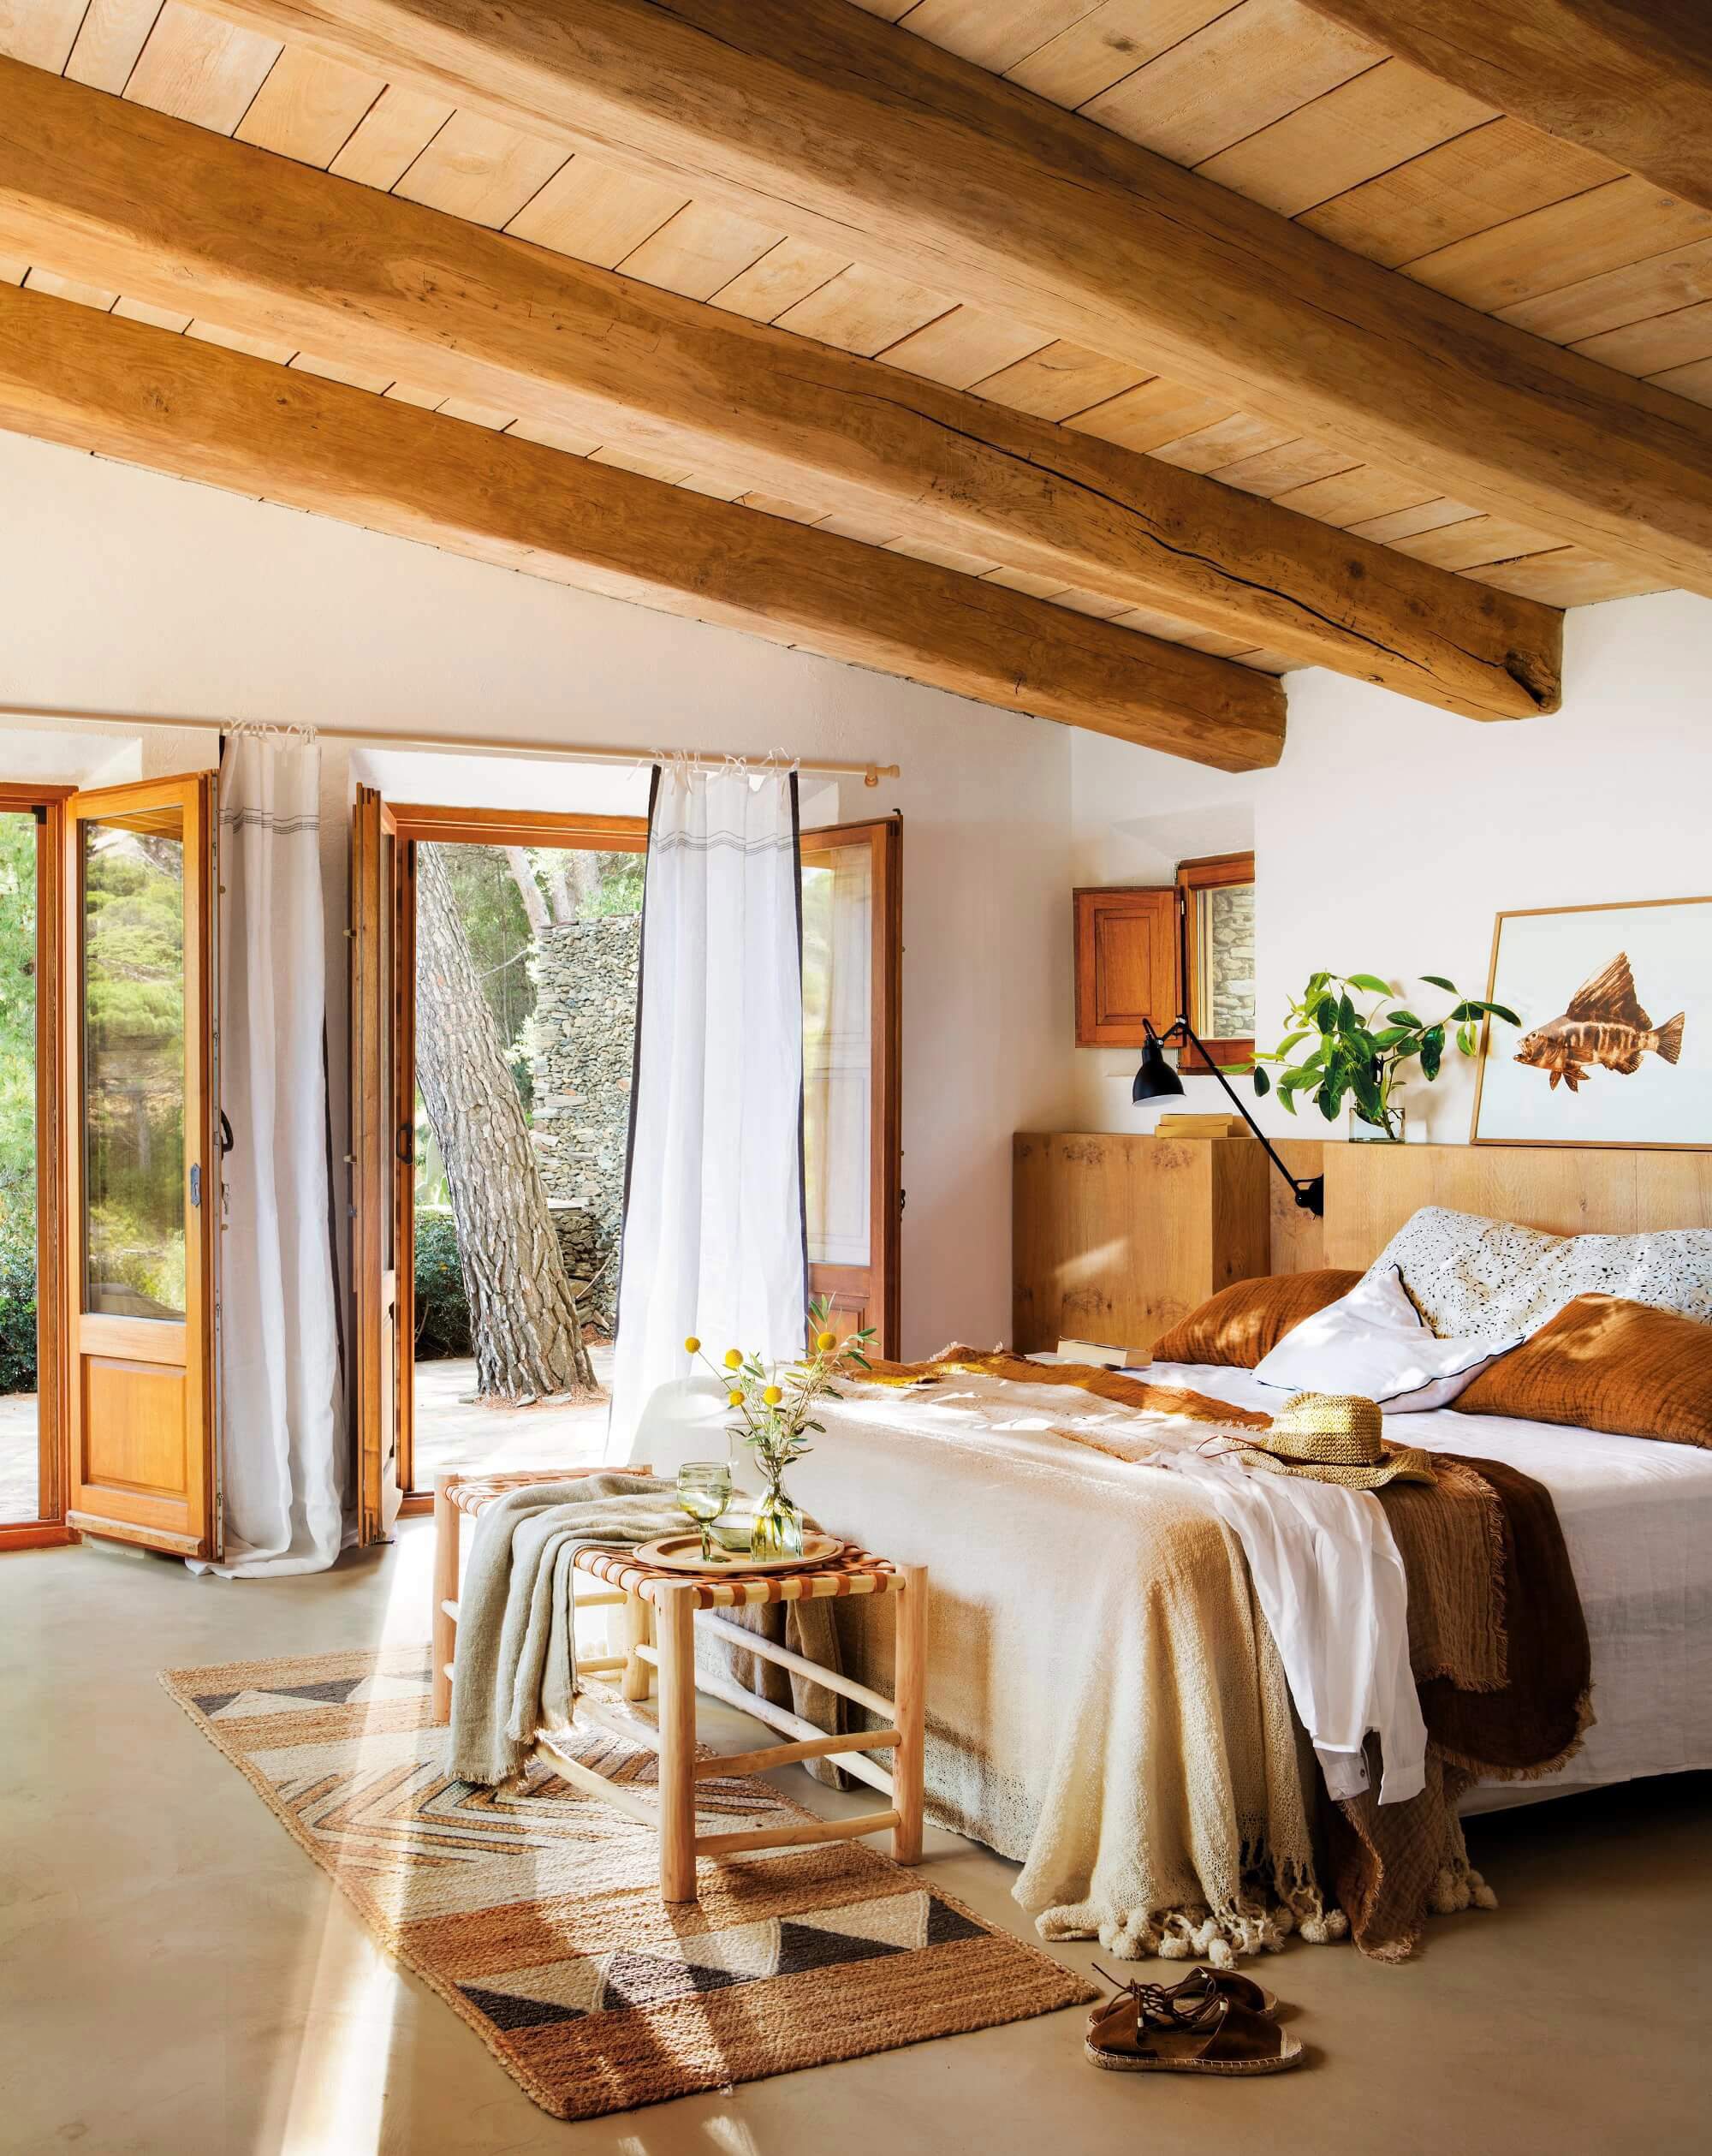 Dormitorio rústico con vigas de madera y decoración en blanco y tonos tierra